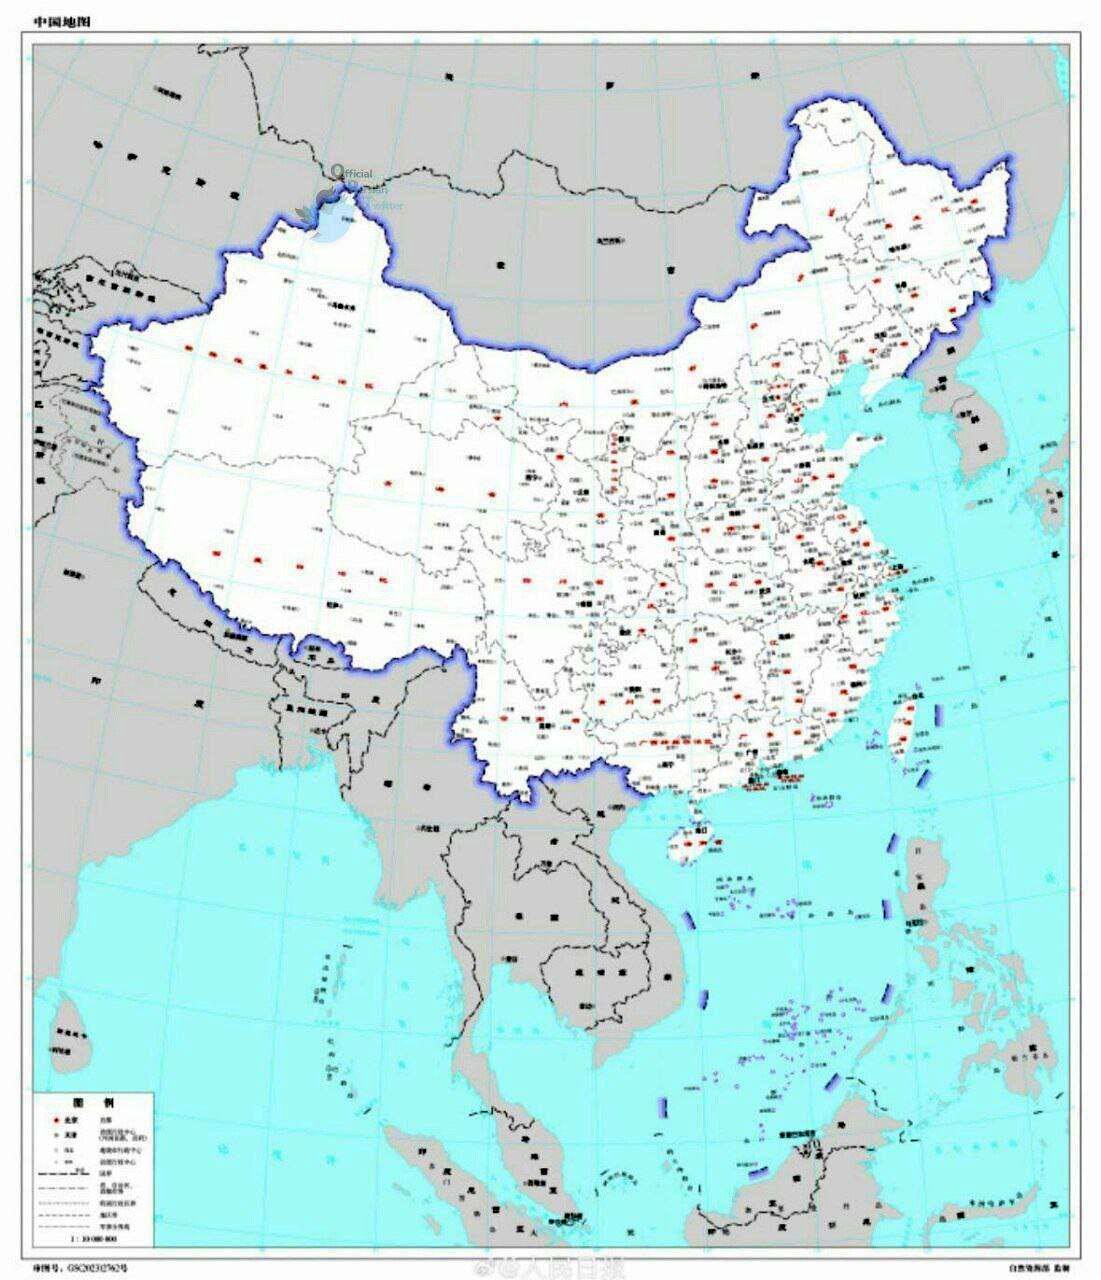 تصویر جدید از نقشه چین برای کشورگشایی!